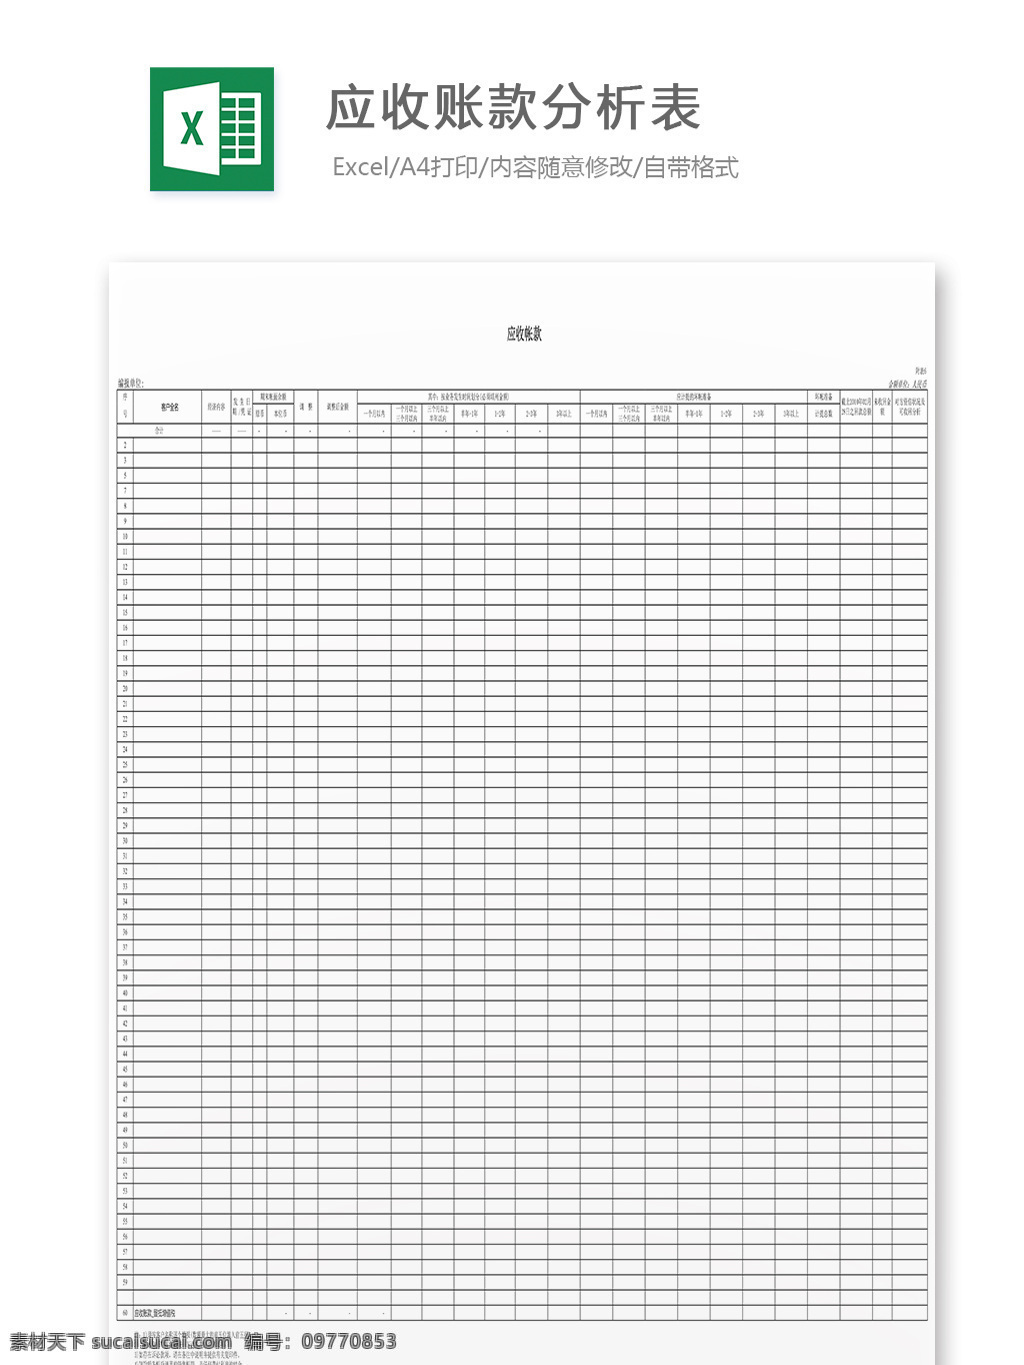 应收 账款 账单 分析 表 表格 表格模板 表格设计 图表 分析表